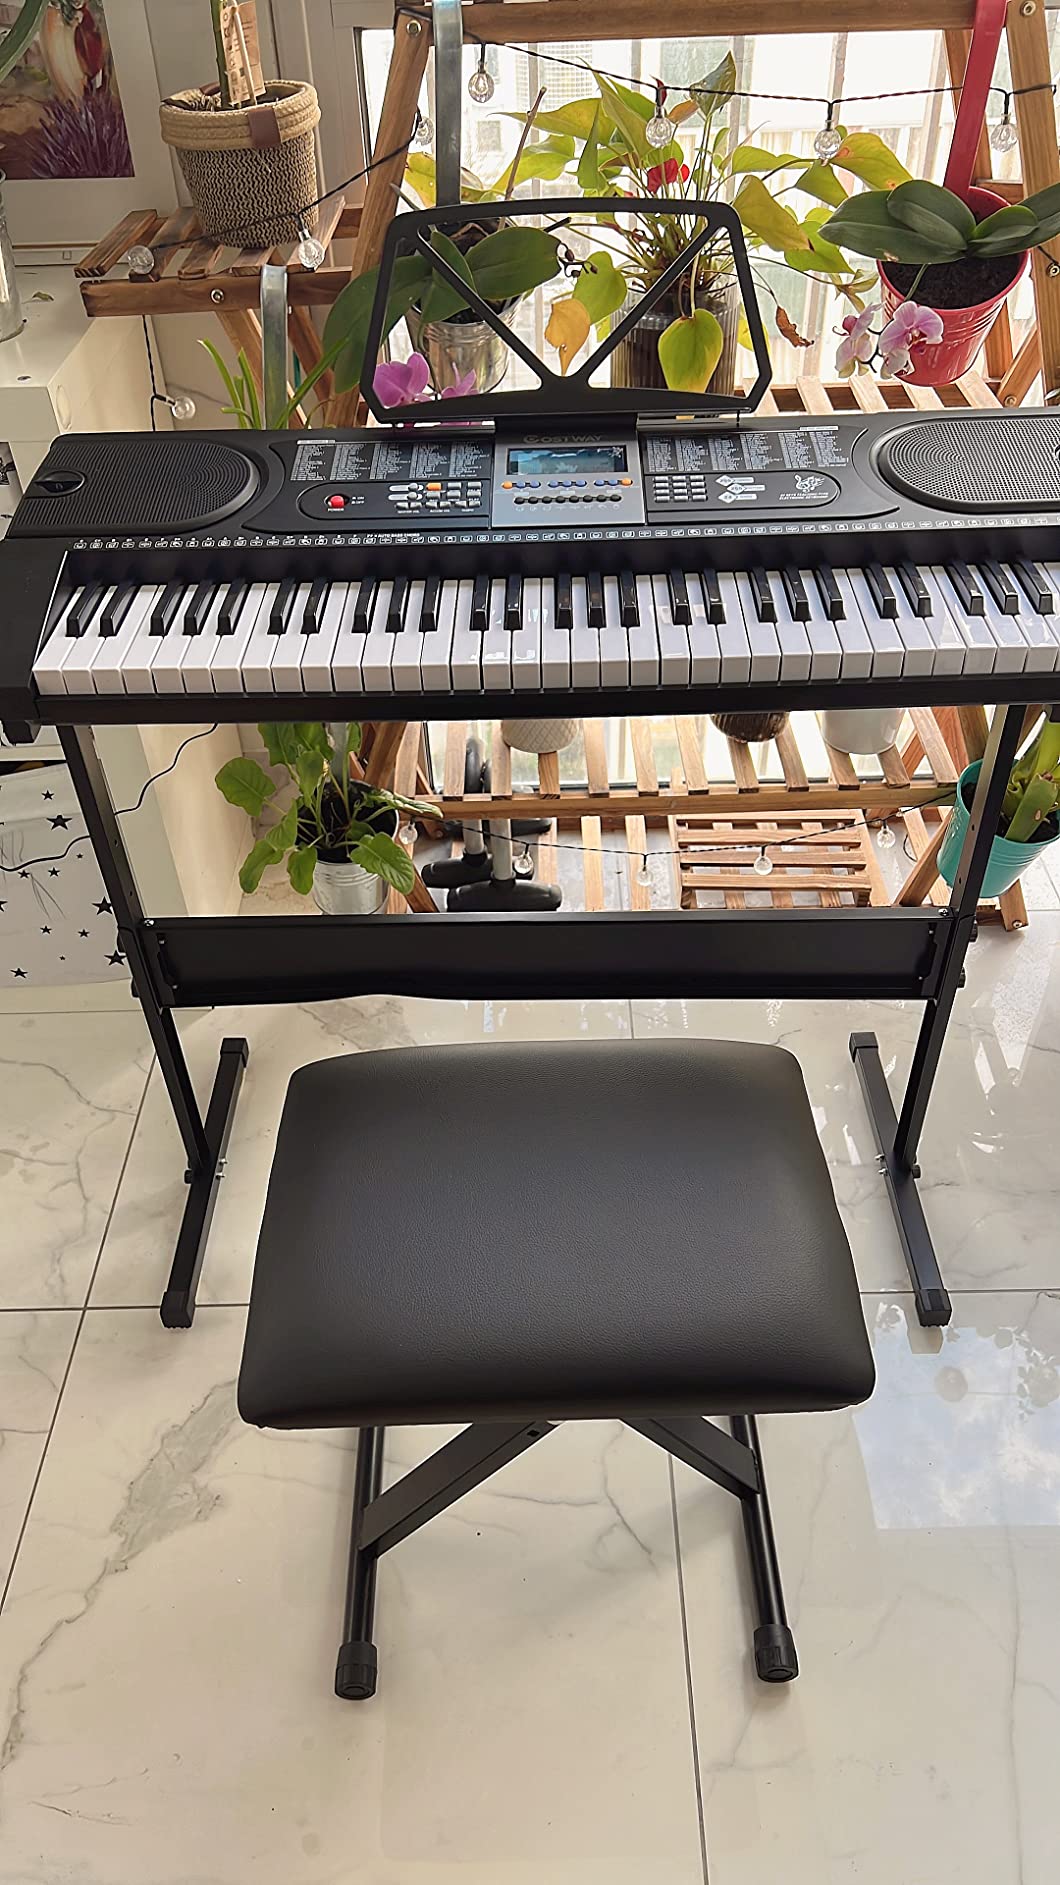 Piano Électrique 61 Touches avec Microphone Support Tabouret et Écran LCD  92,5x34x10CM pour Enfants Débutants Adultes